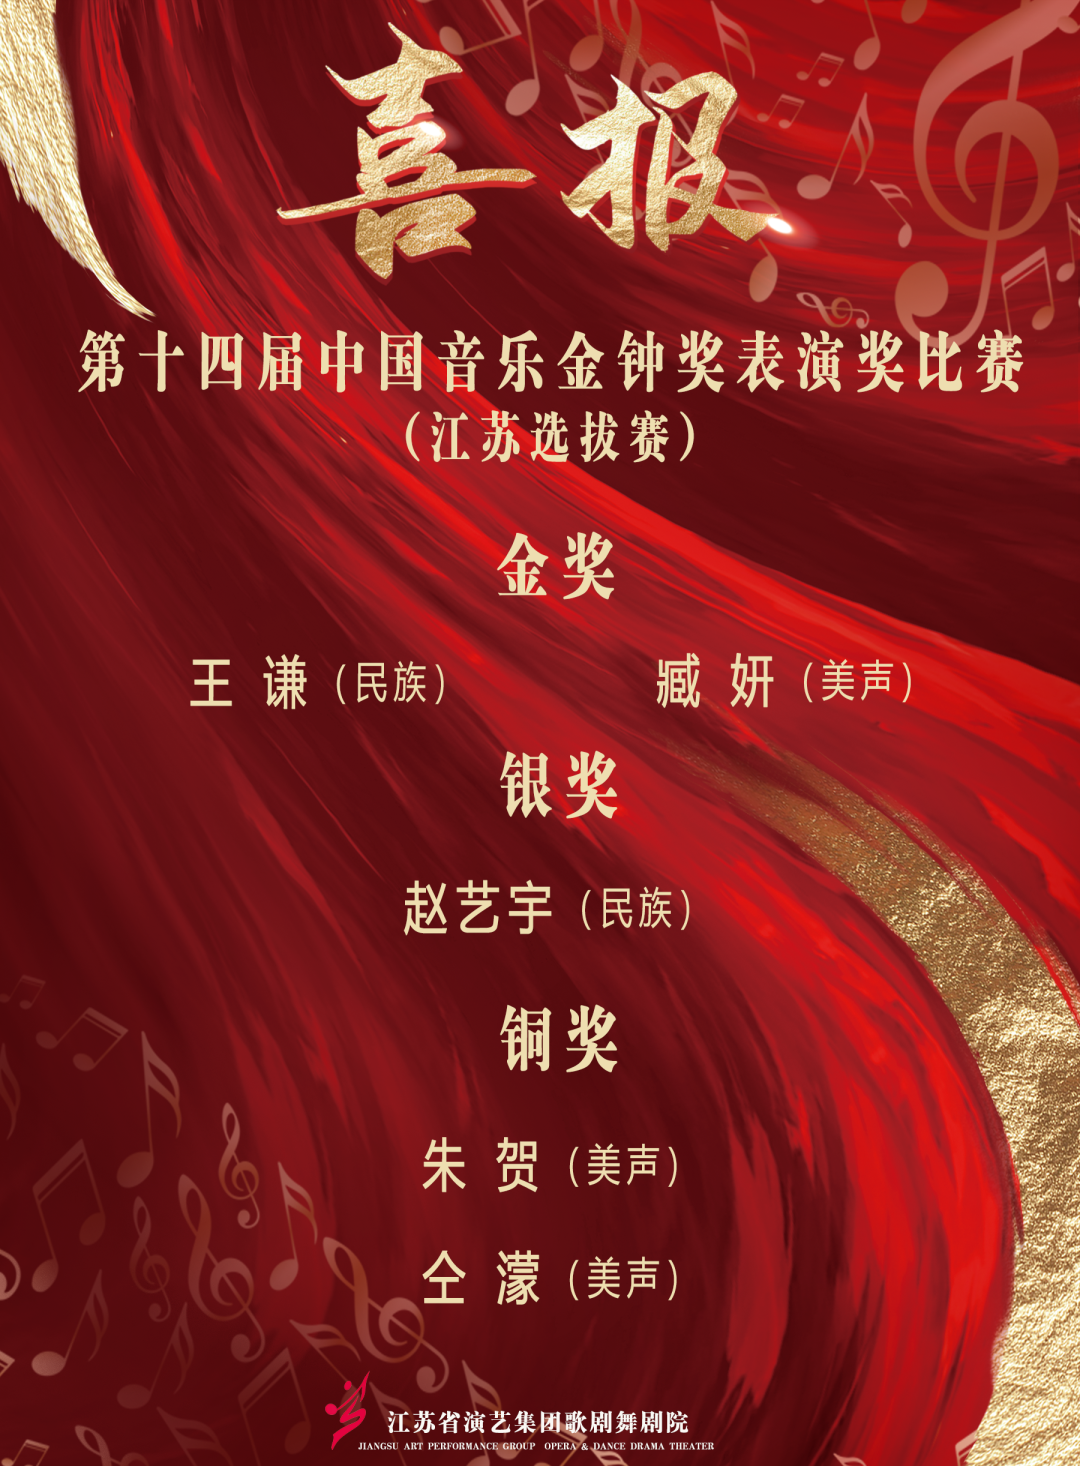 喜报 | 集团在“第十四届中国音乐金钟奖（江苏赛区）”取得佳绩